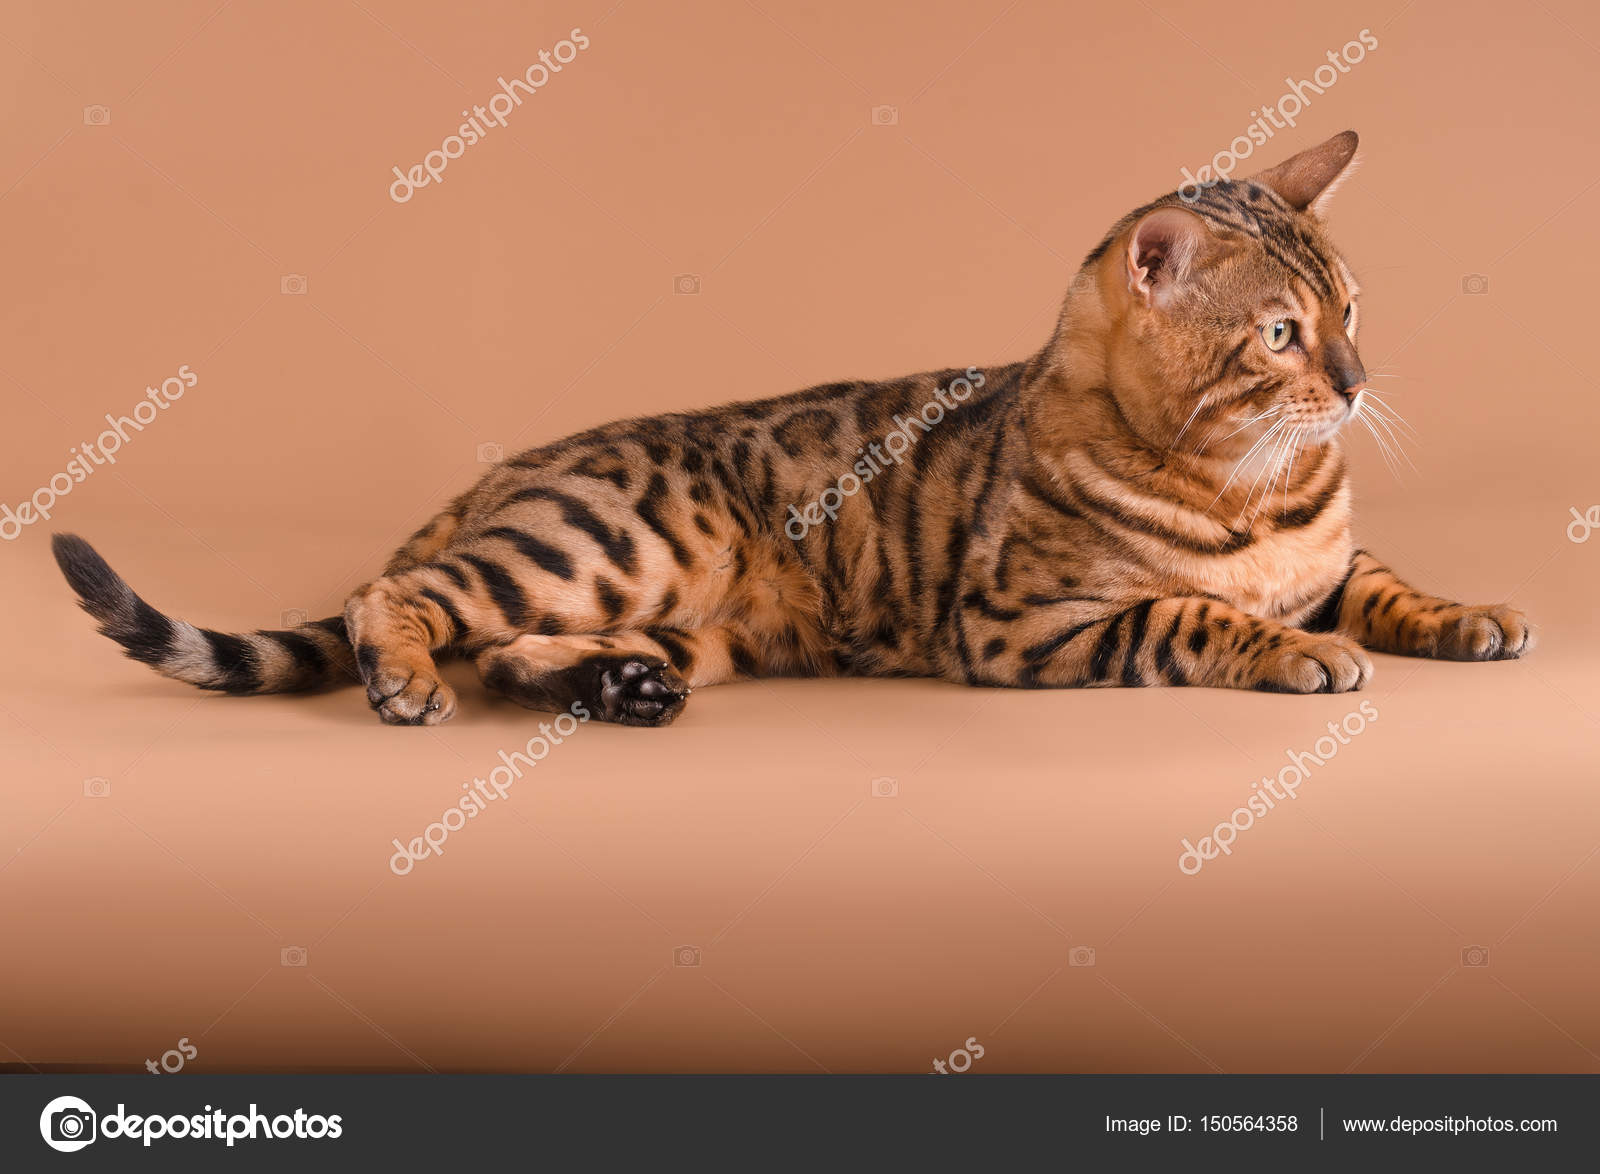 Бенгальский кот на бежевом фоне — Стоковое фото © adikatz #150564358